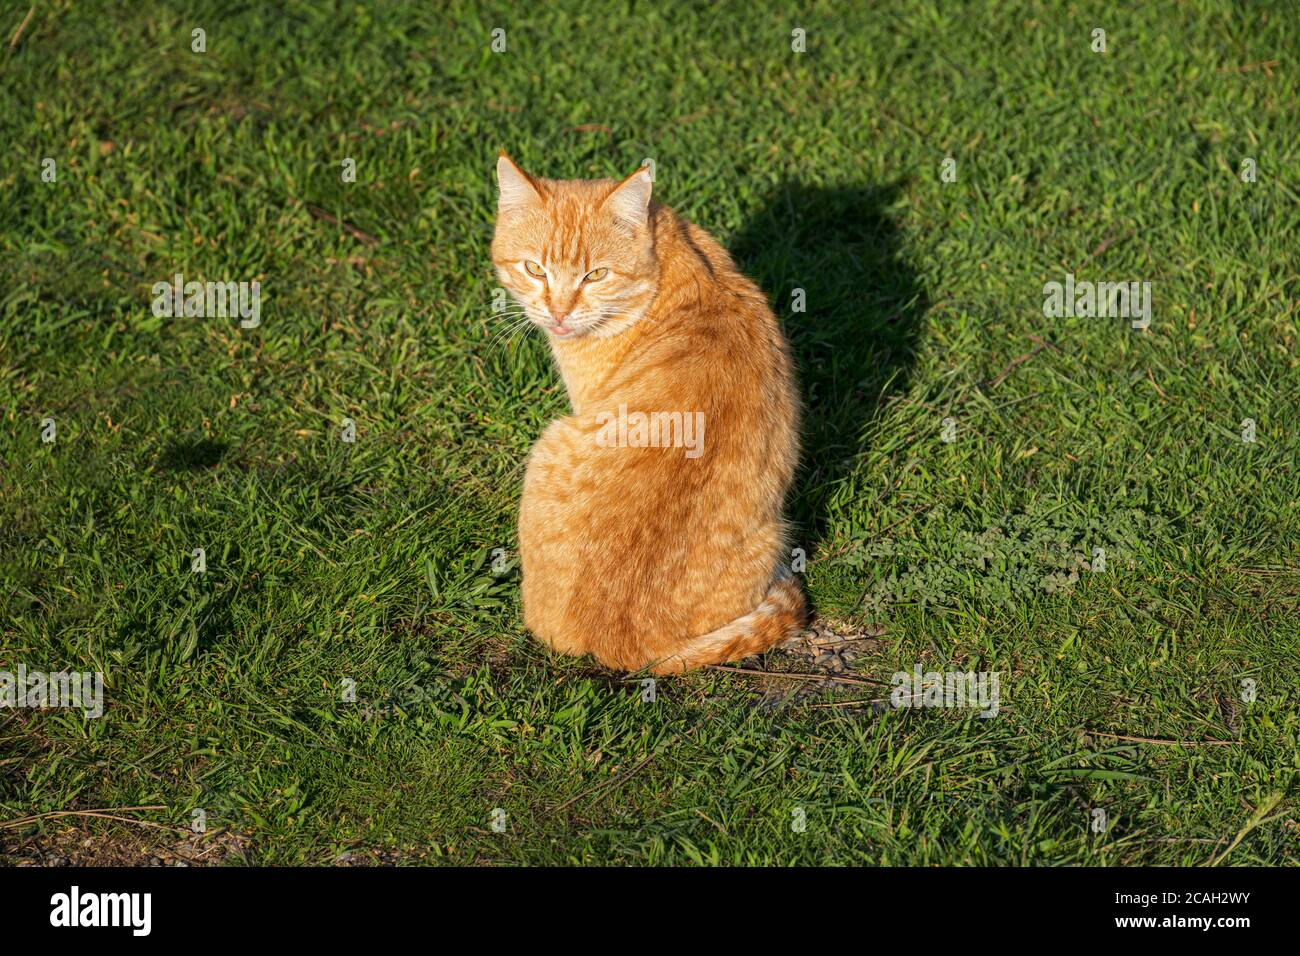 Gatto rosso di strada seduto sull'erba verde. Un bel gatto tabby con occhi sorpresi. Ritratto di un giovane gattino rosso su uno sfondo di verde luminoso Foto Stock